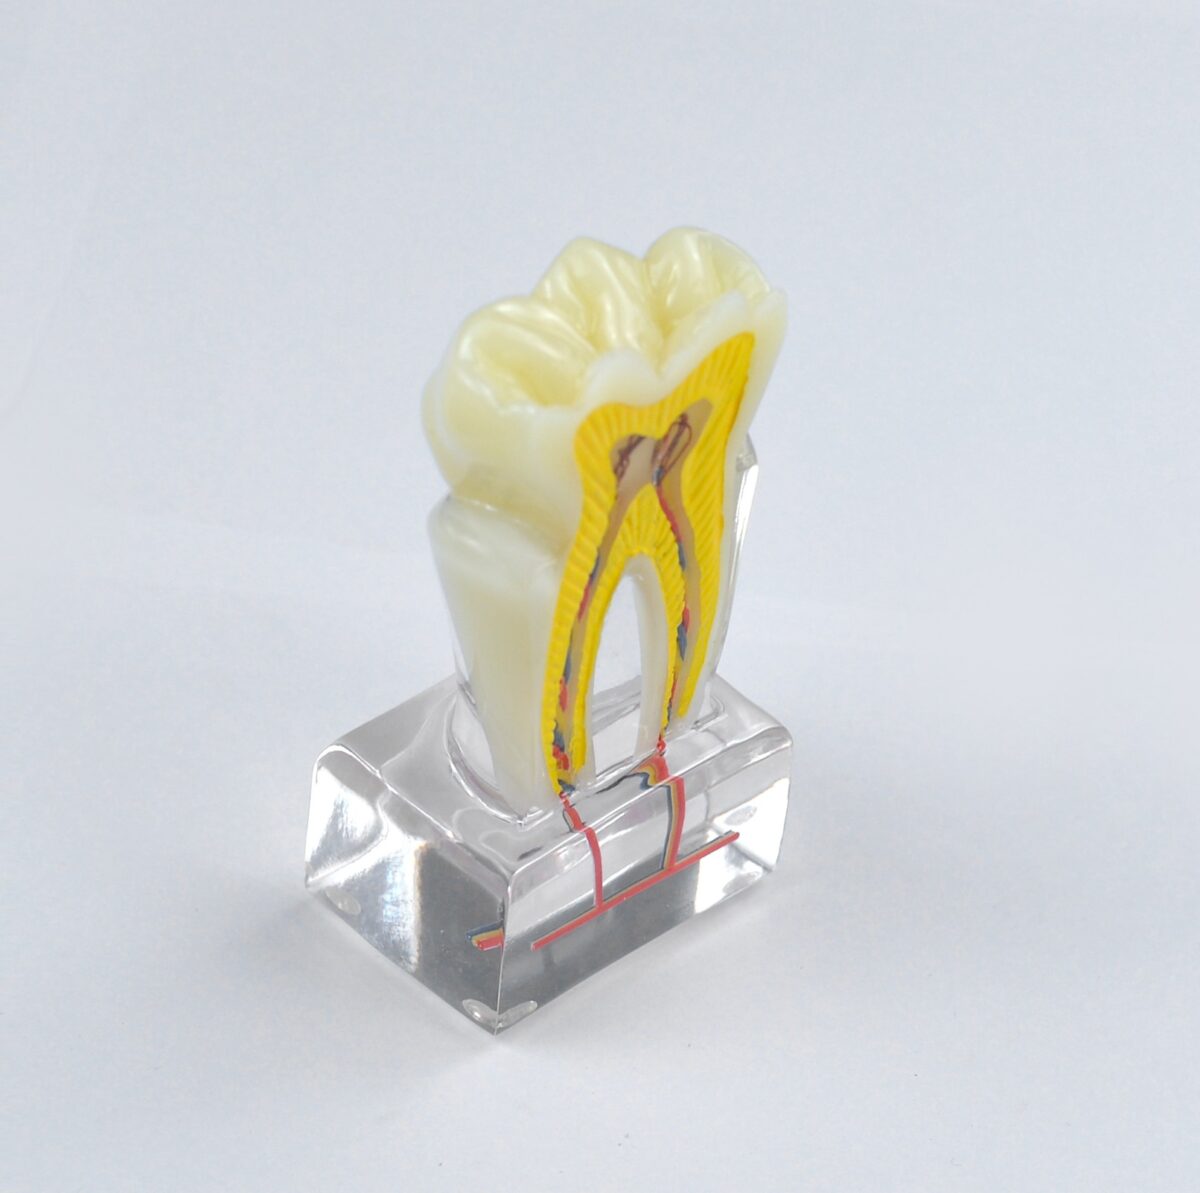 pulp cavity dental model